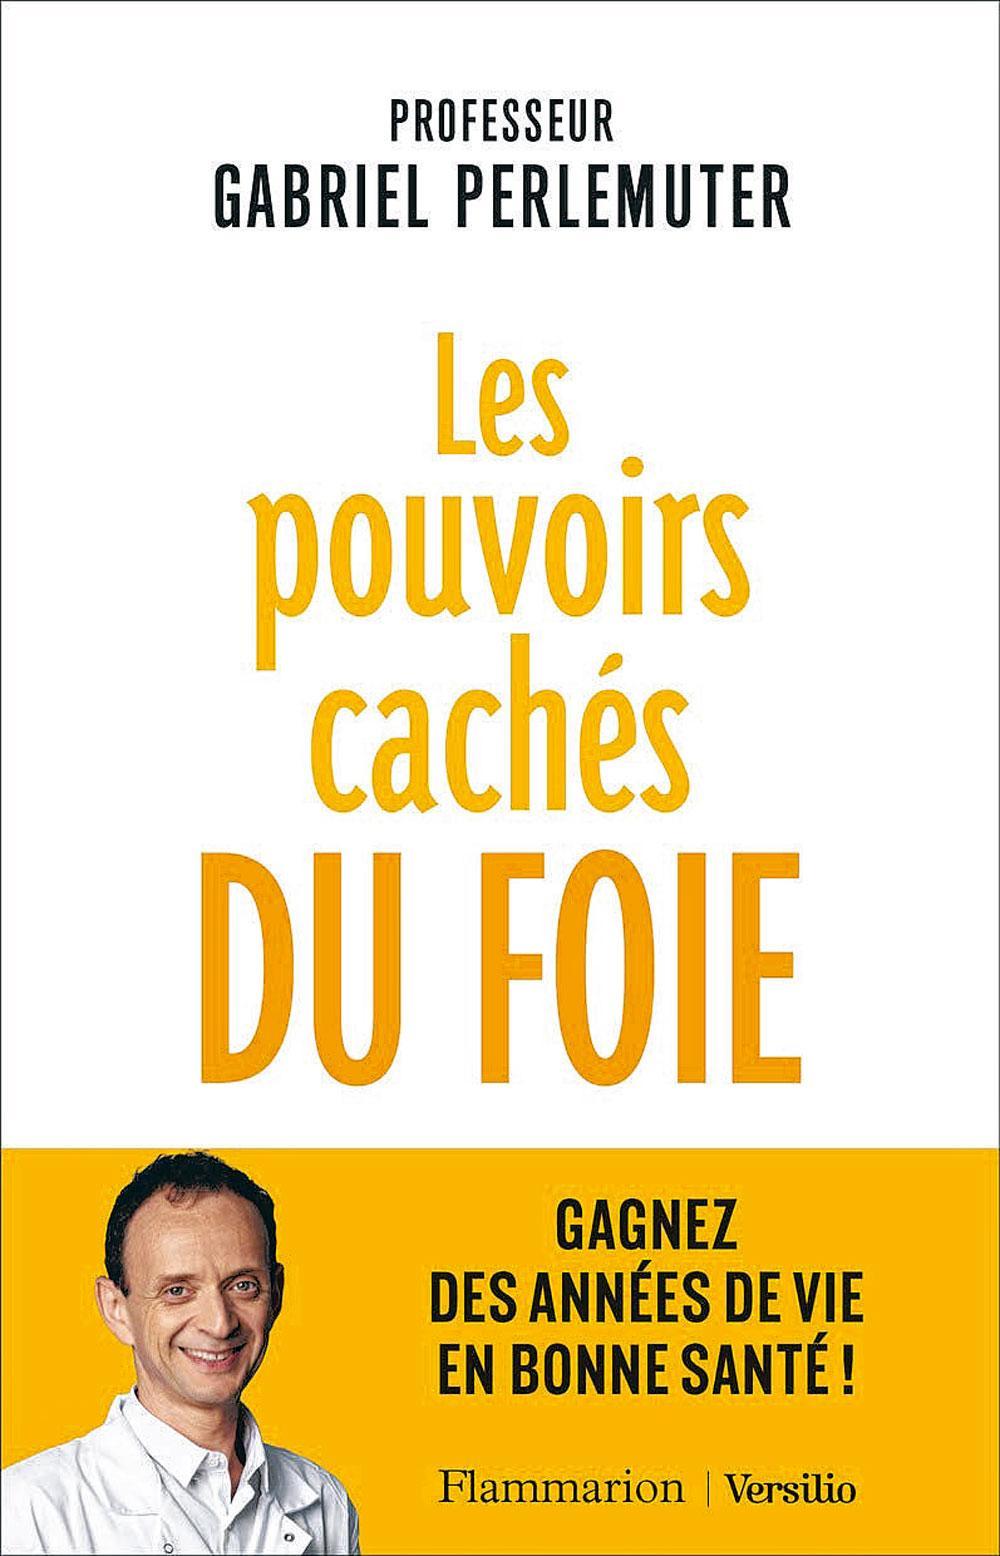 (1) Les Pouvoirs cachés du foie. Gagnez des années de vie en bonne santé !, par Gabriel Perlemuter, Flammarion/Versilio, 272 p.